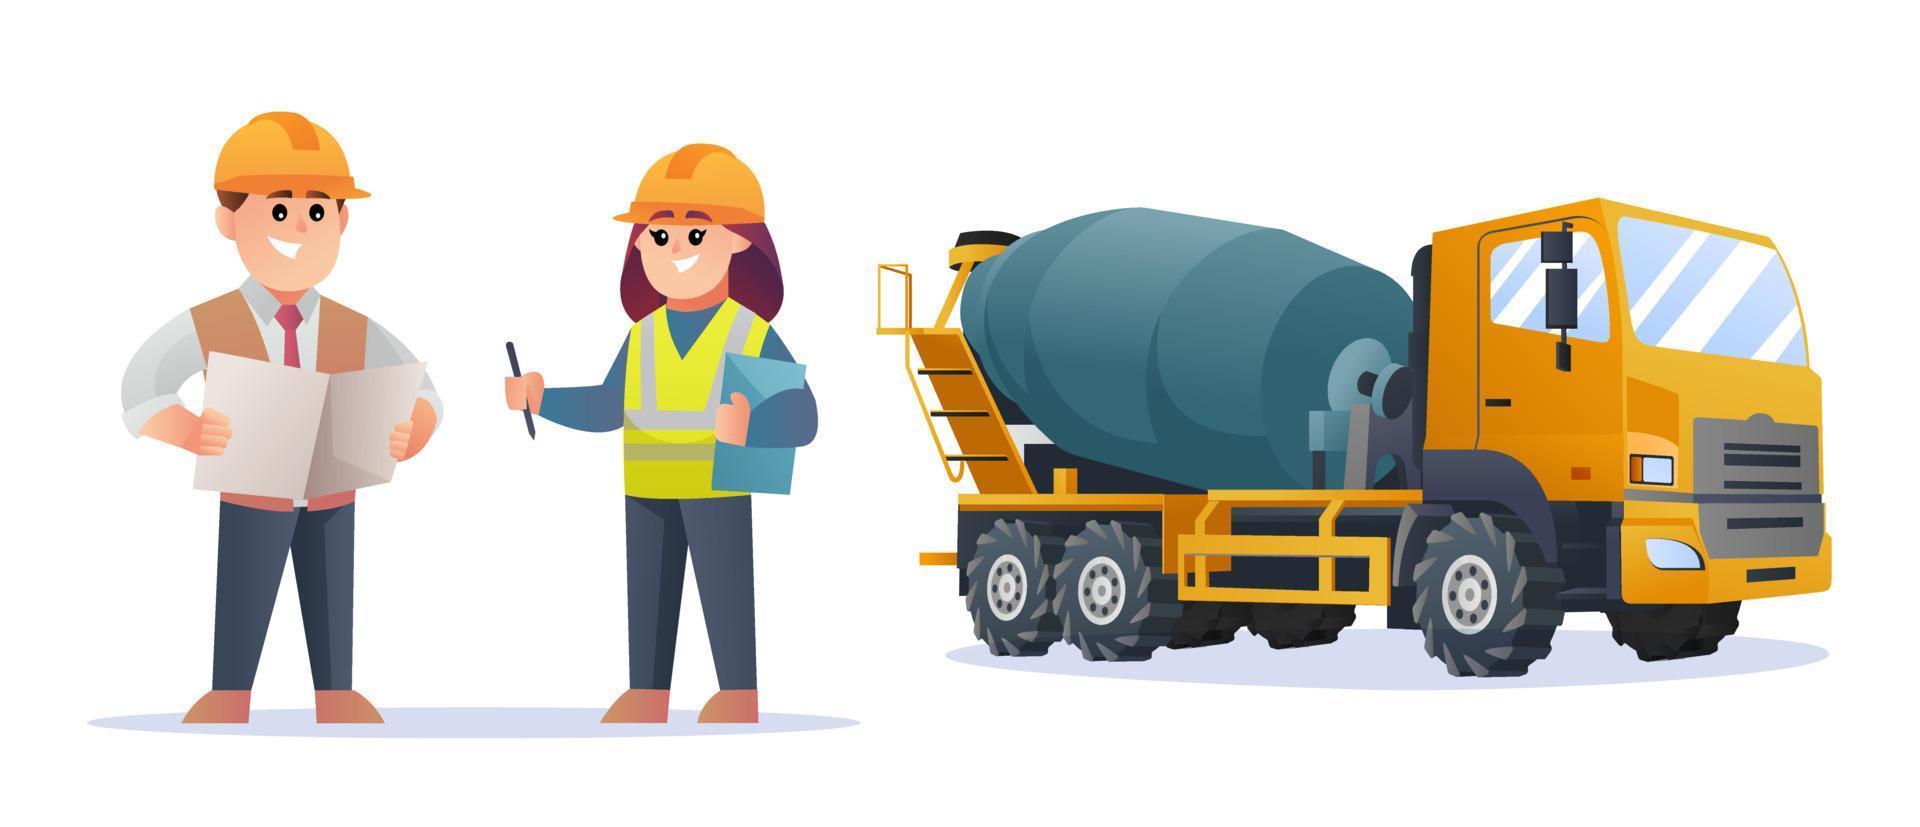 söt konstruktion förman och kvinnliga ingenjör karaktärer med betong mixer lastbil illustration vektor